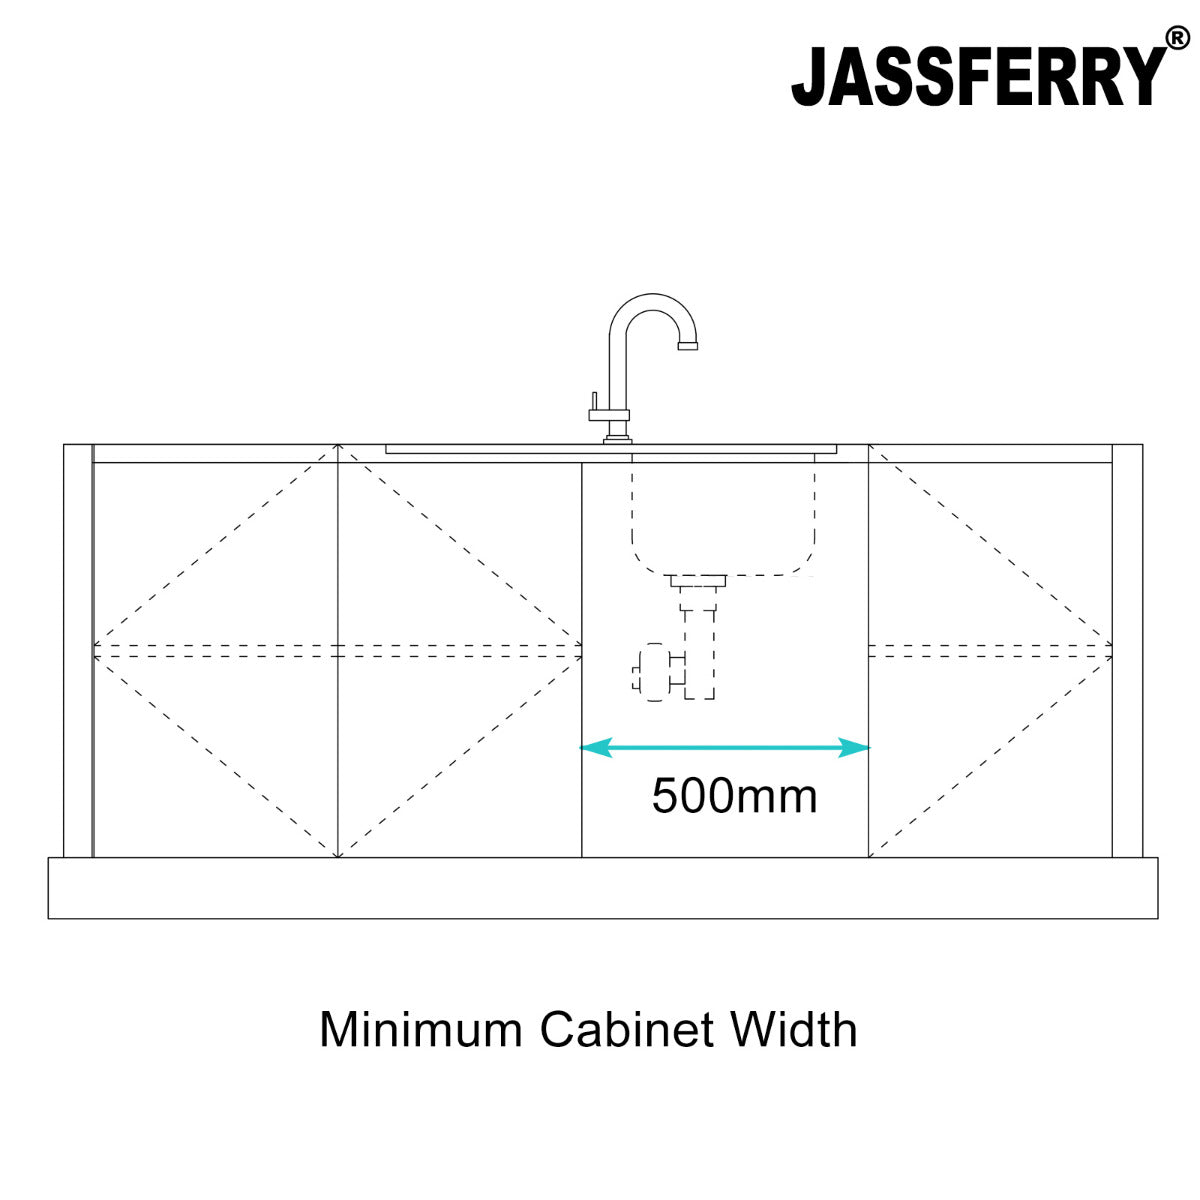 JassferryJASSFERRY Black Glass Top Kitchen Sink 1 Stainless Steel Bowl Lefthand Drainer-772brKitchen Sink